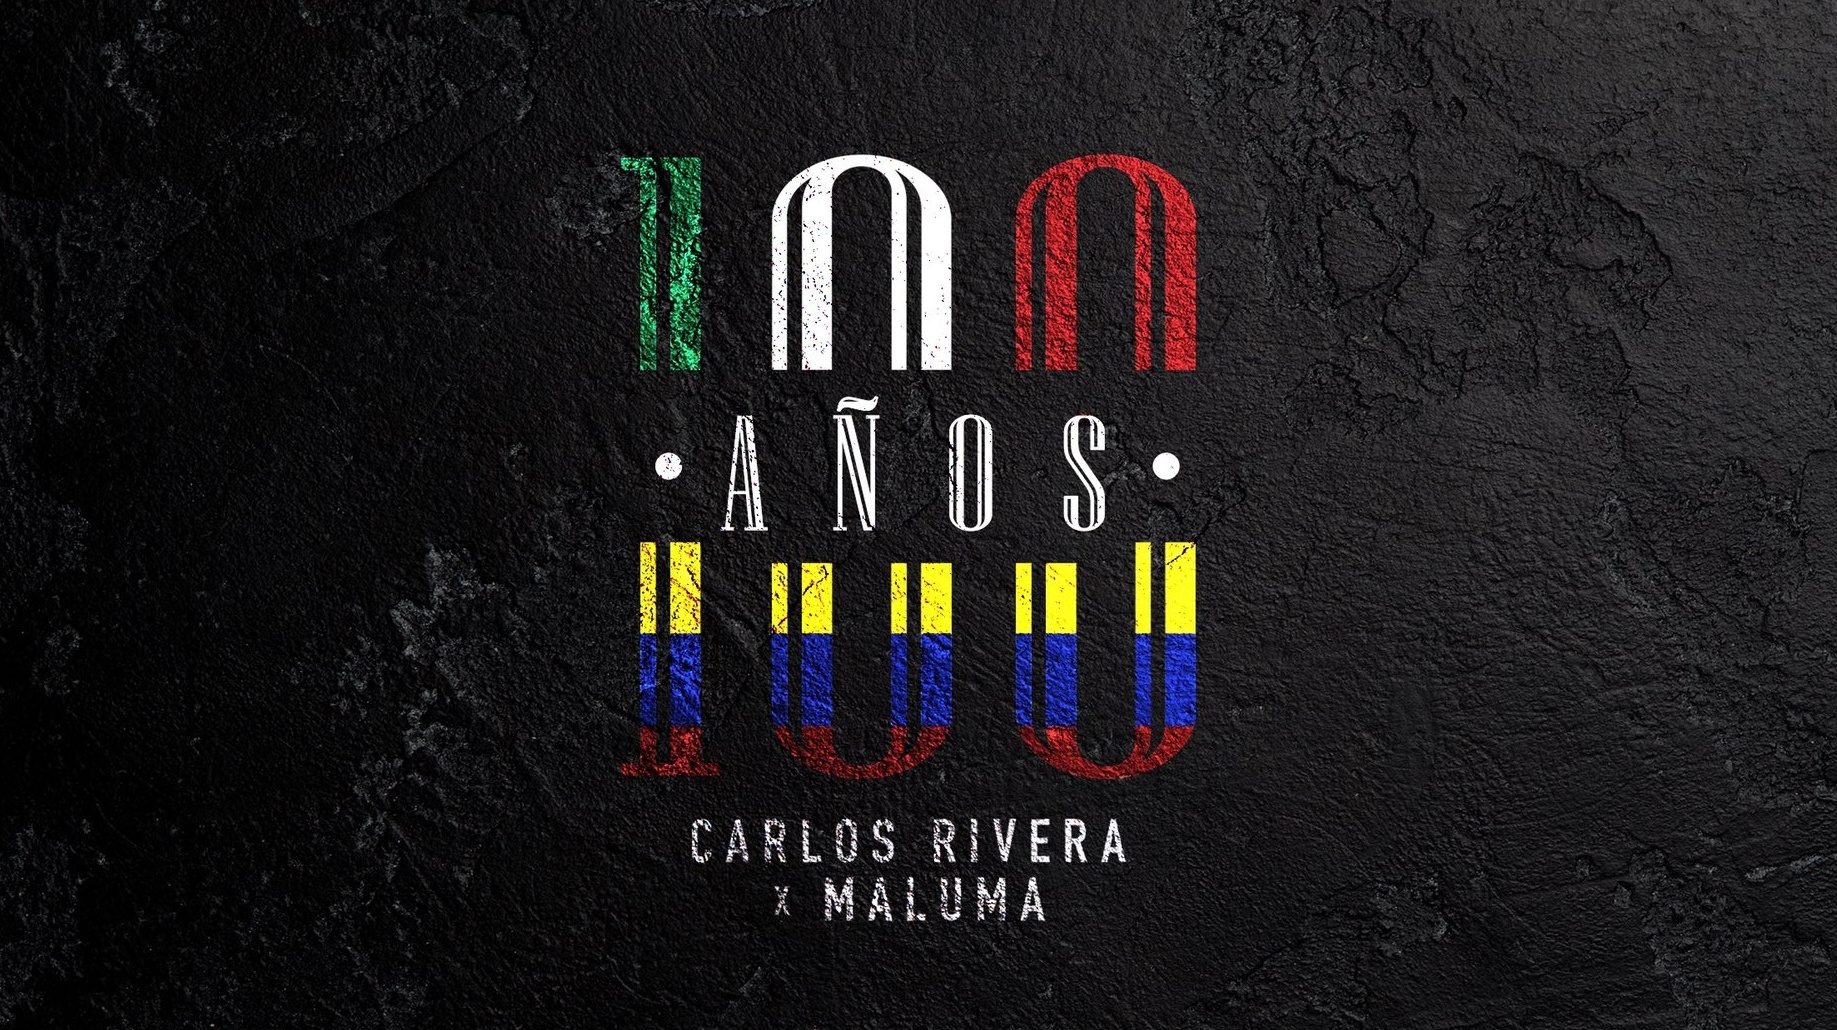 Carlos Rivera y Maluma anuncian nueva colaboración